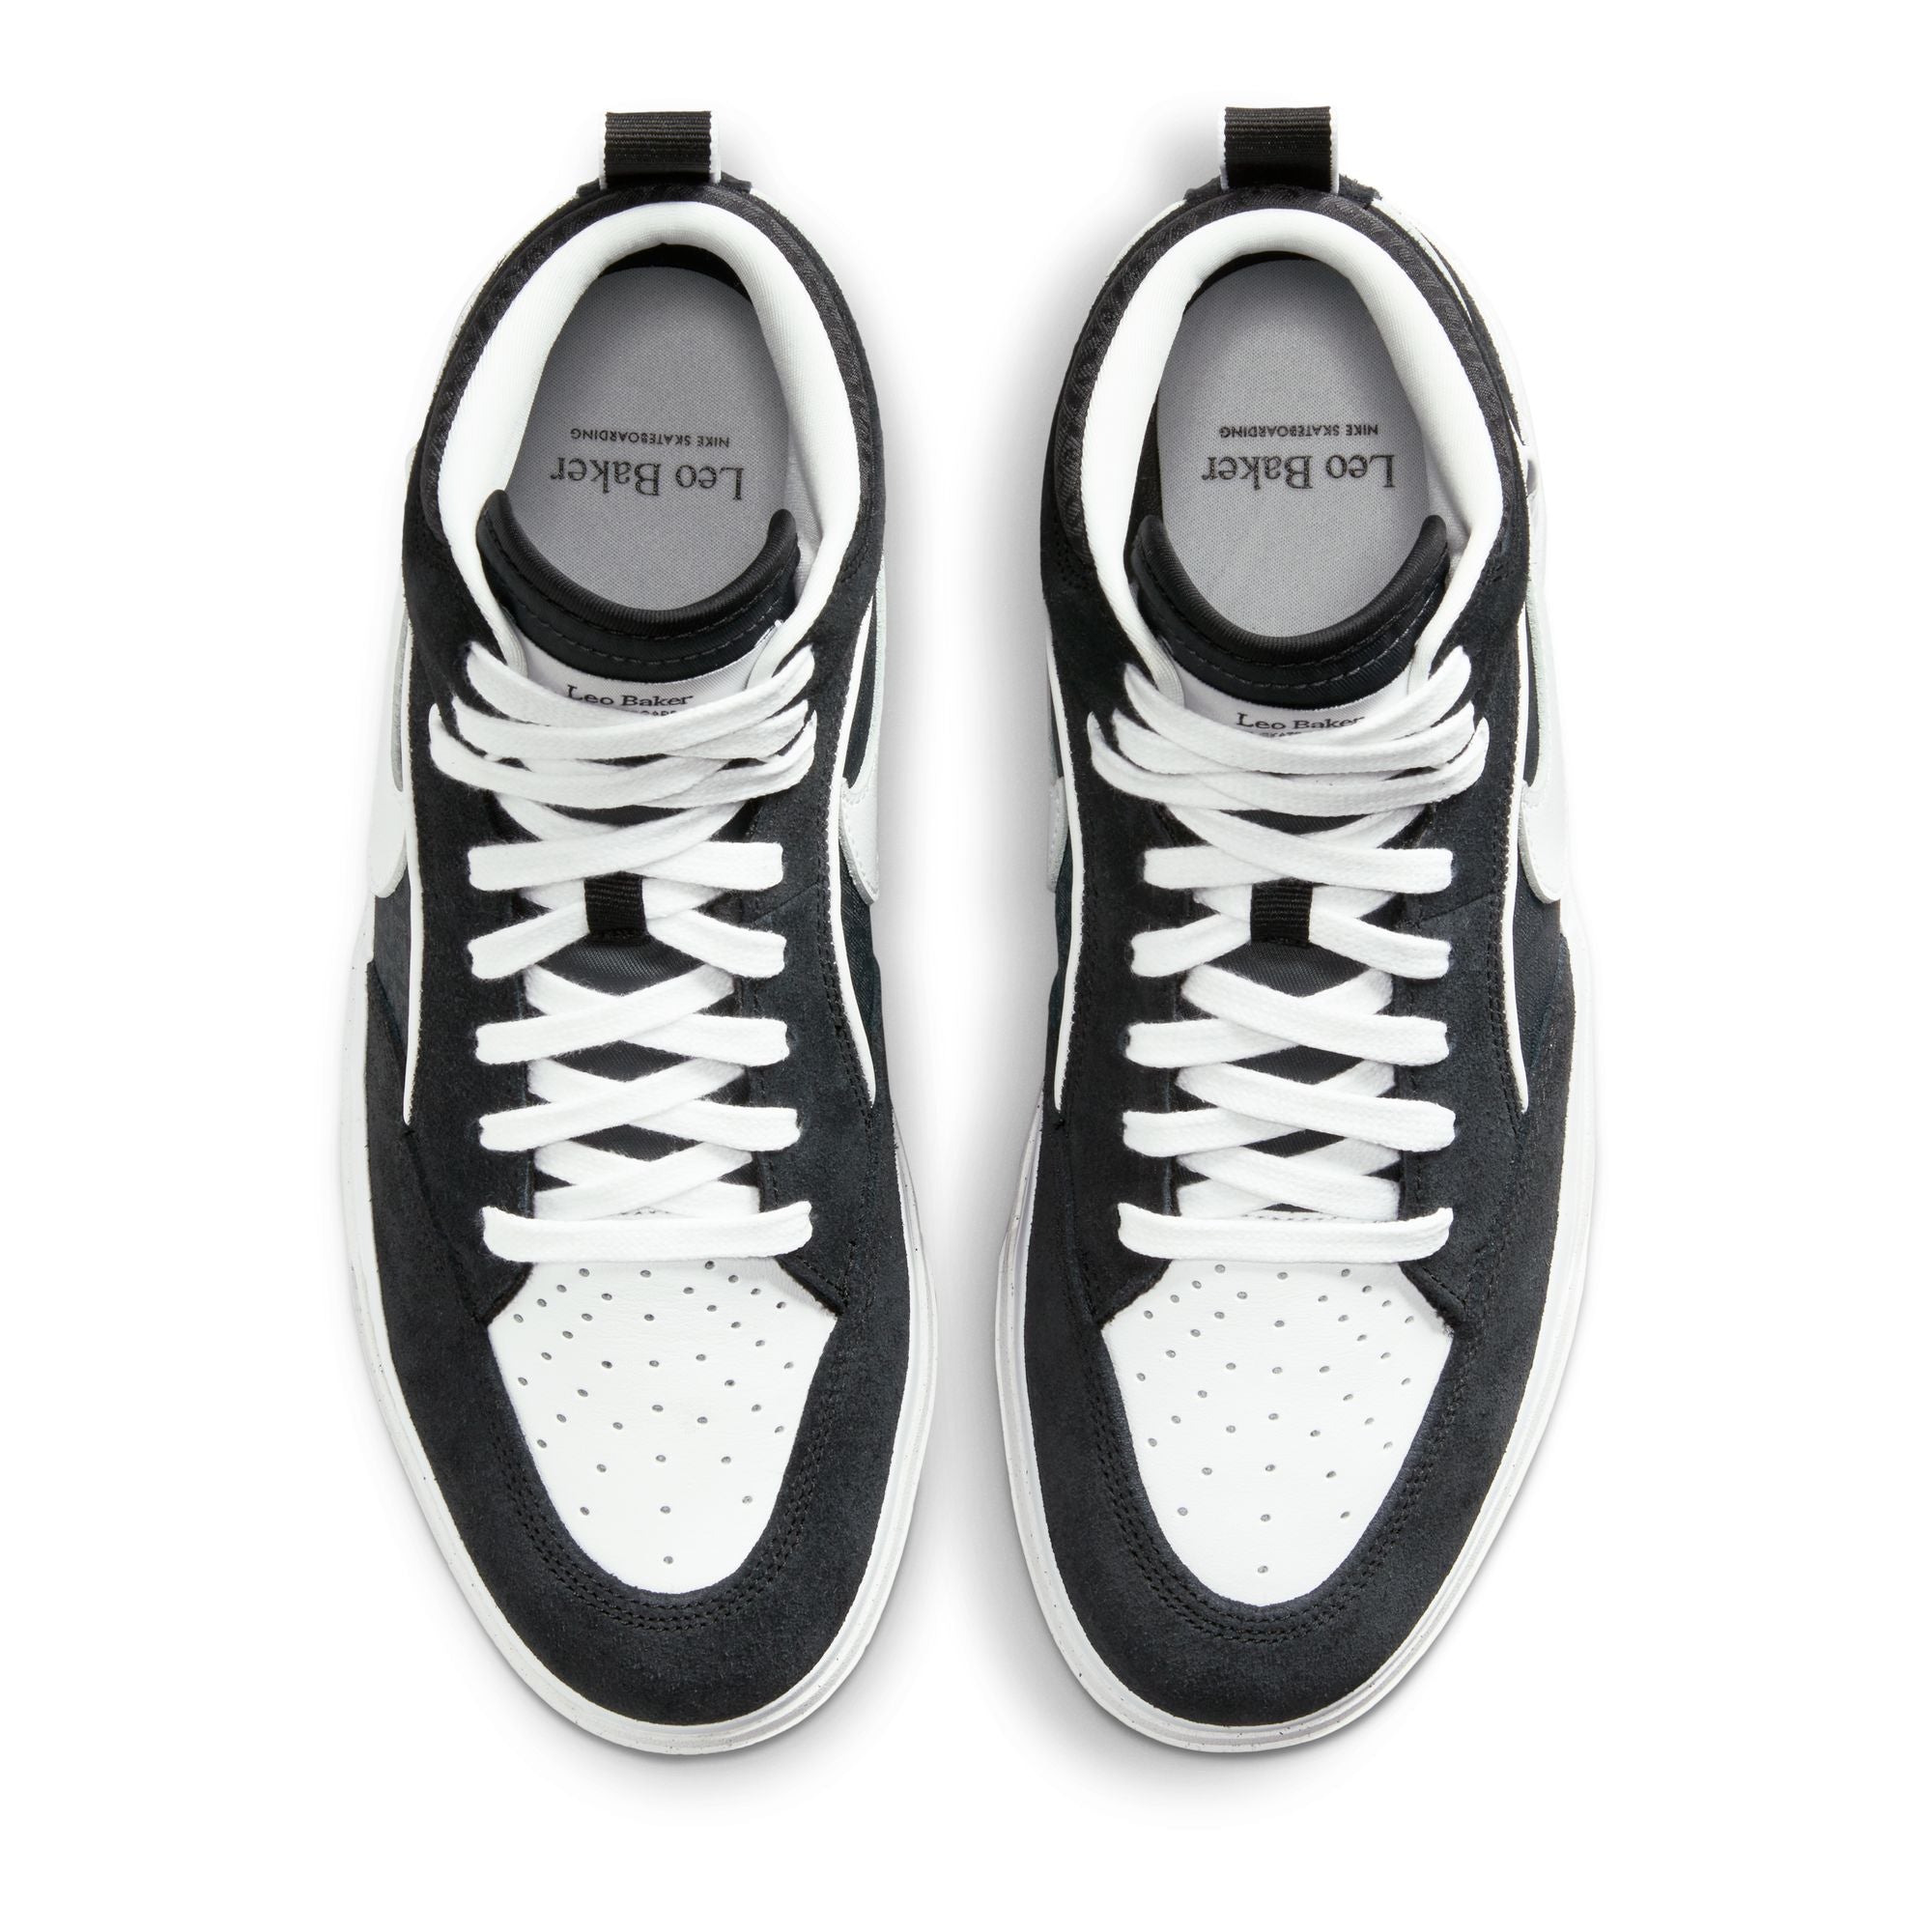 Nike SB Leo Baker React Shoes - Black/White-Gum-Light Brown